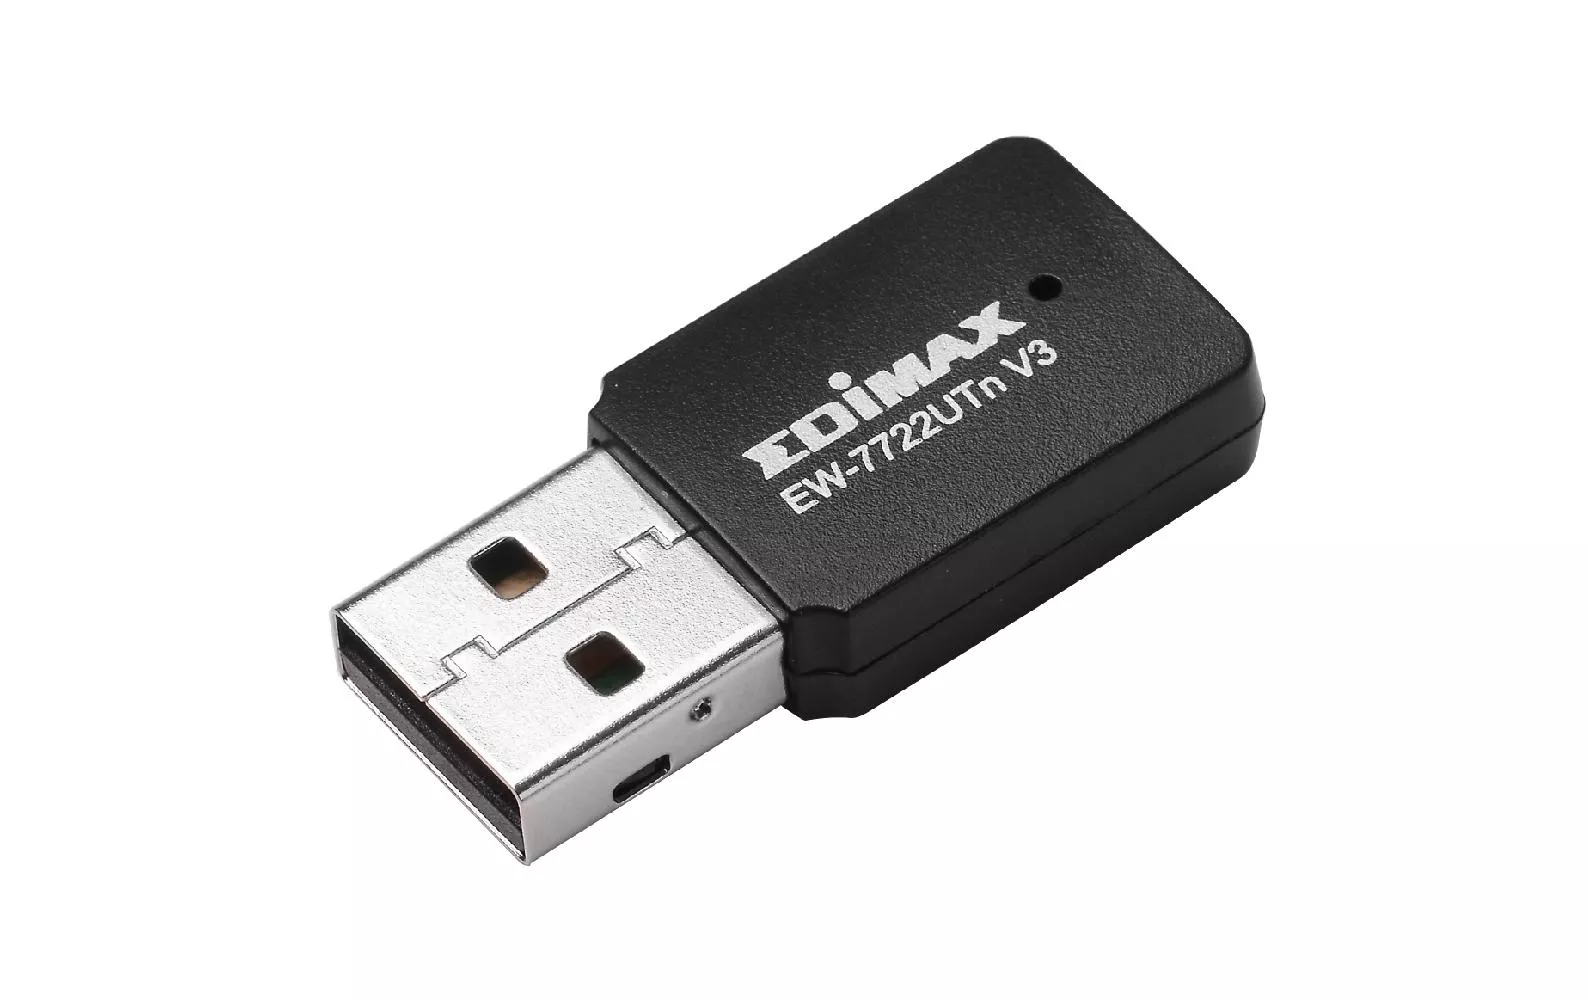 WLAN-N chiavetta USB EW-7722UTN V3